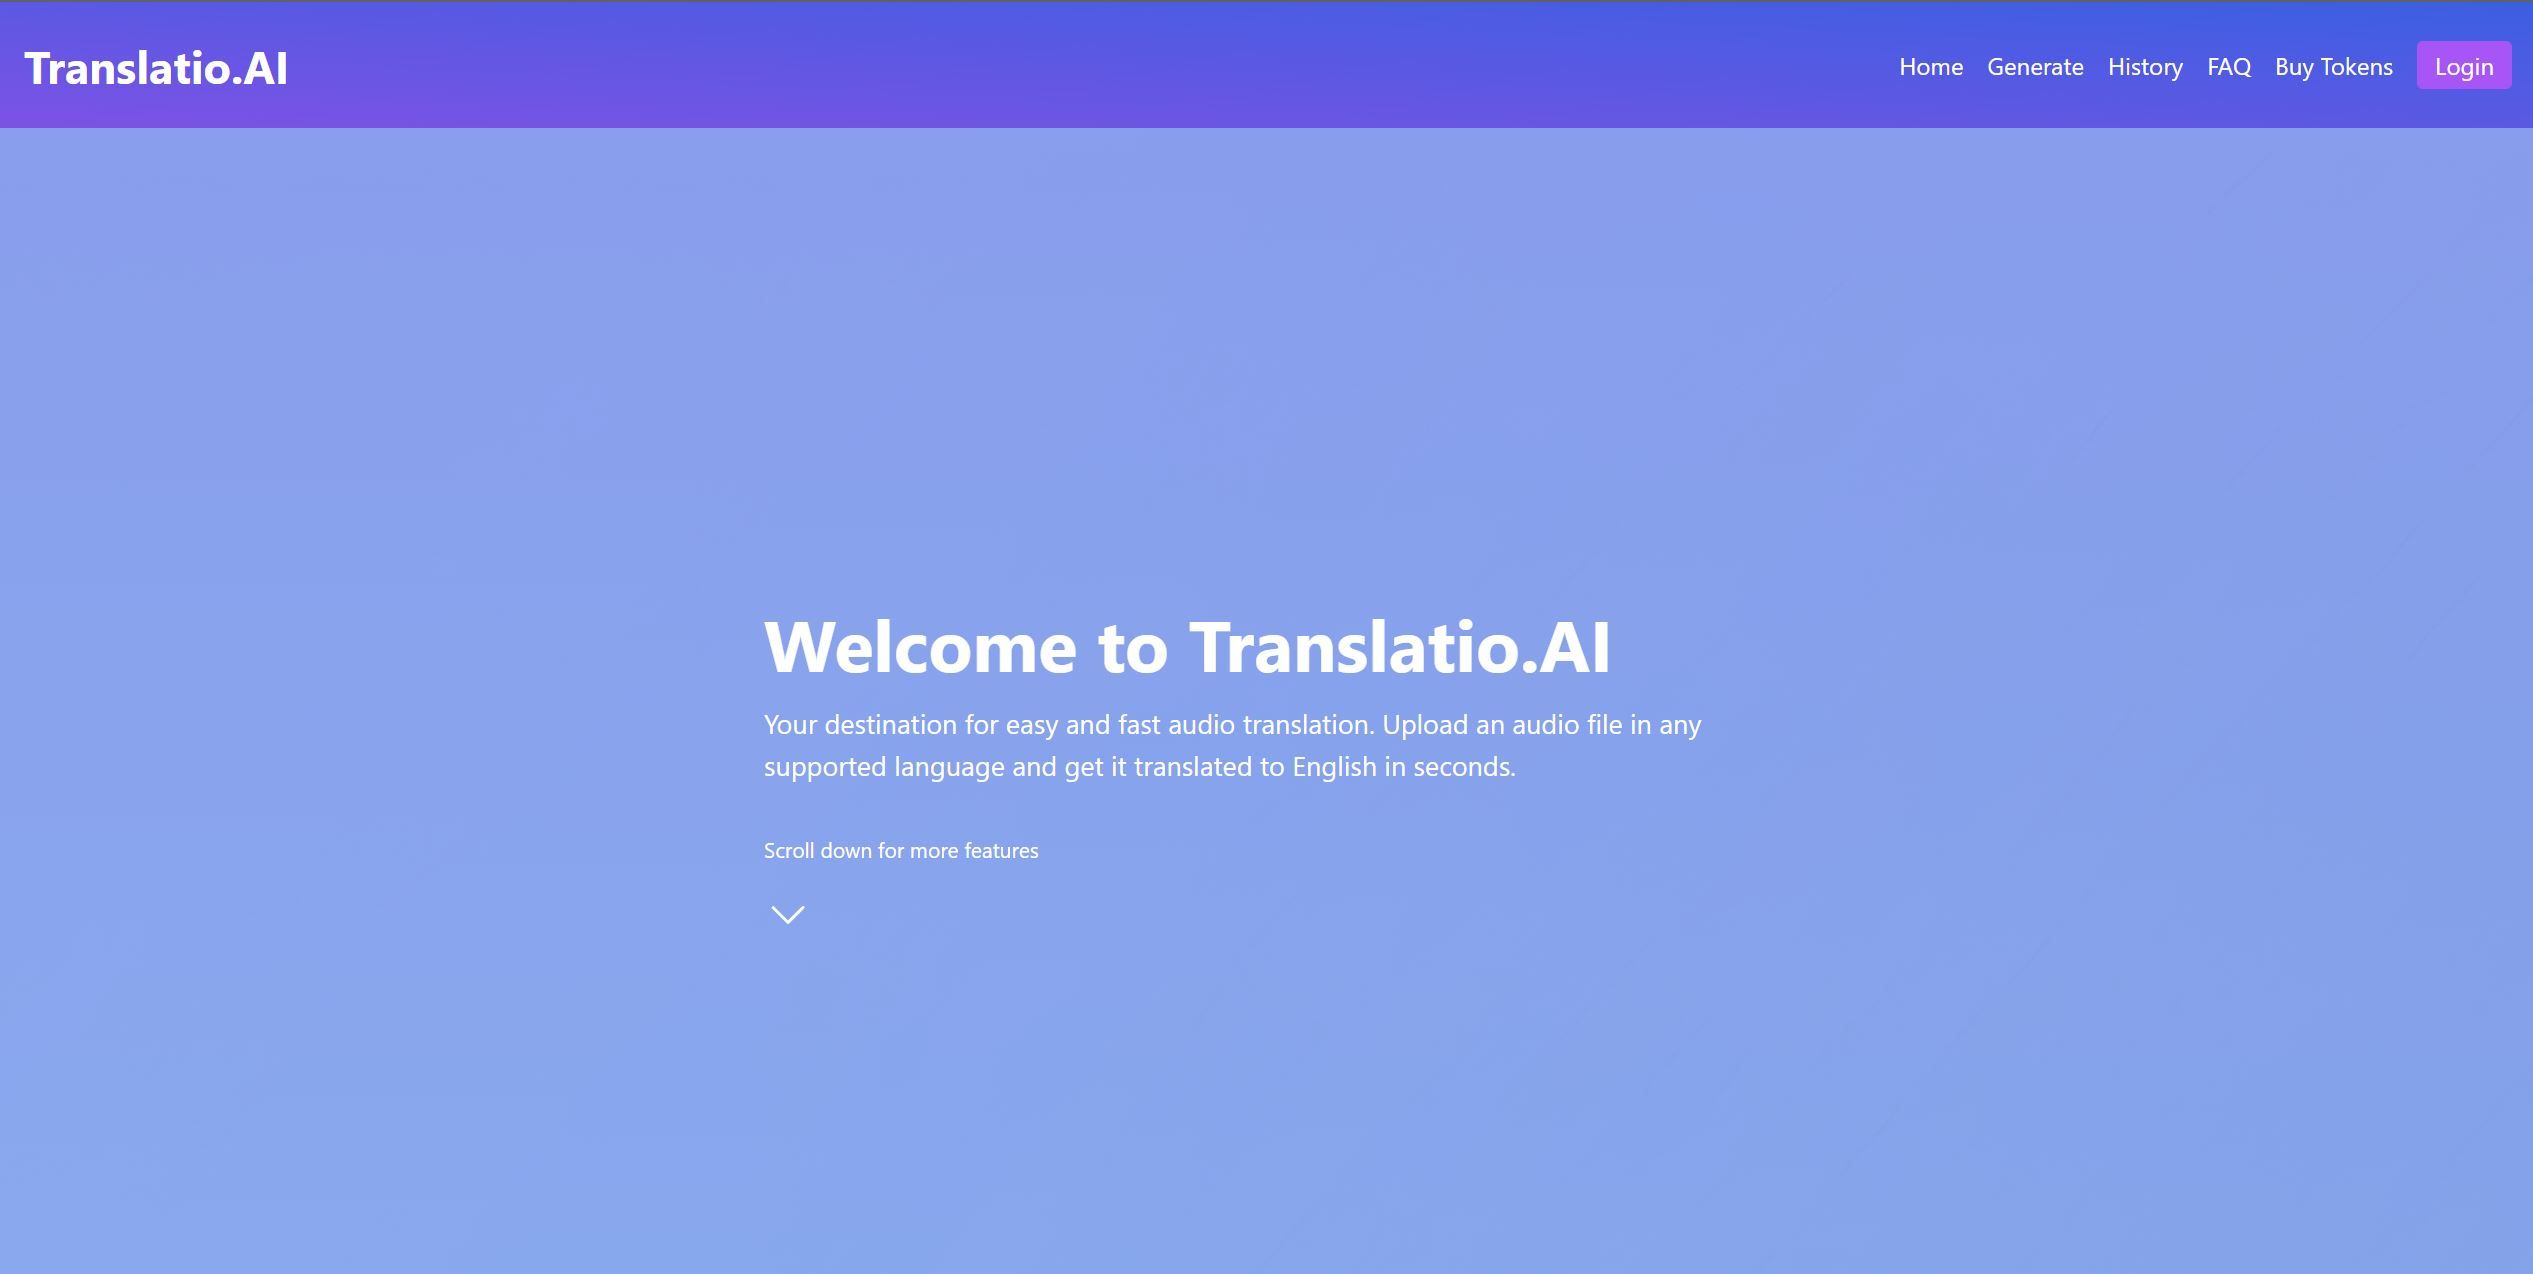 Post: Translatio.AI